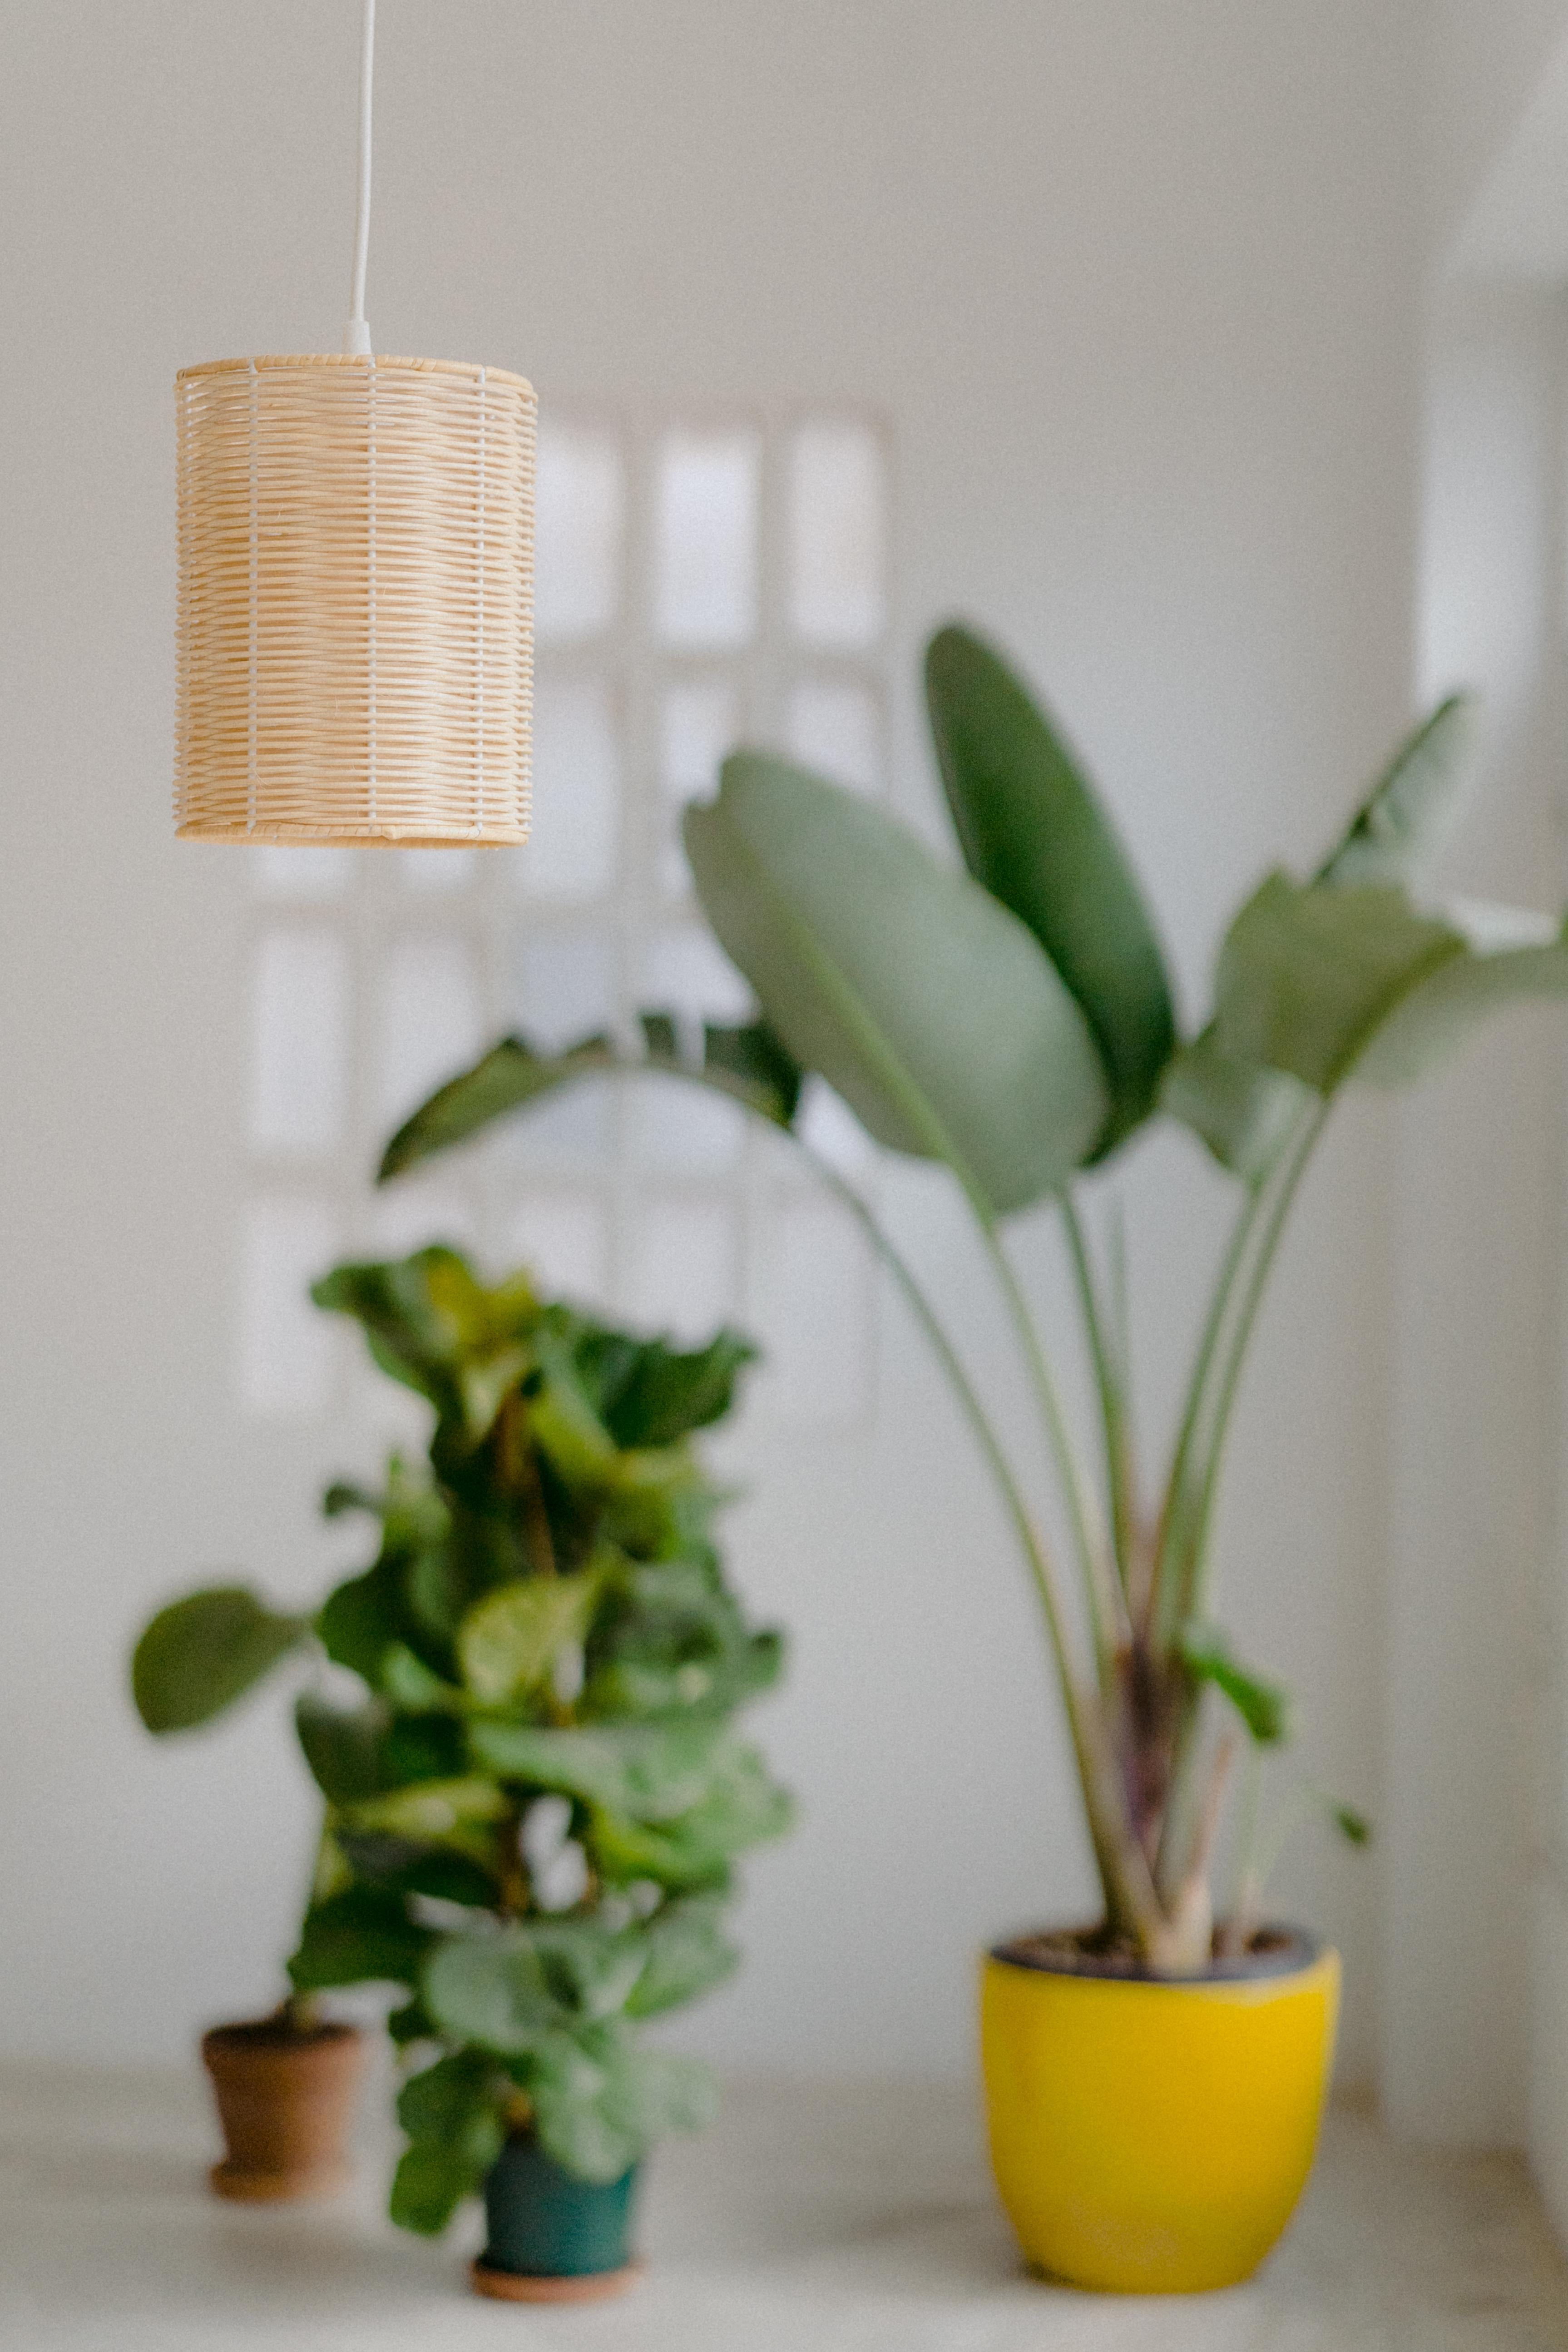 Les lampes COSTA sont conçues et fabriquées par Mediterranean Objects à Barcelone, en Espagne. 
Il s'agit de petites lampes contemporaines en rotin naturel tressé à la main dans notre atelier artisanal. 
Il est recommandé de les utiliser avec des